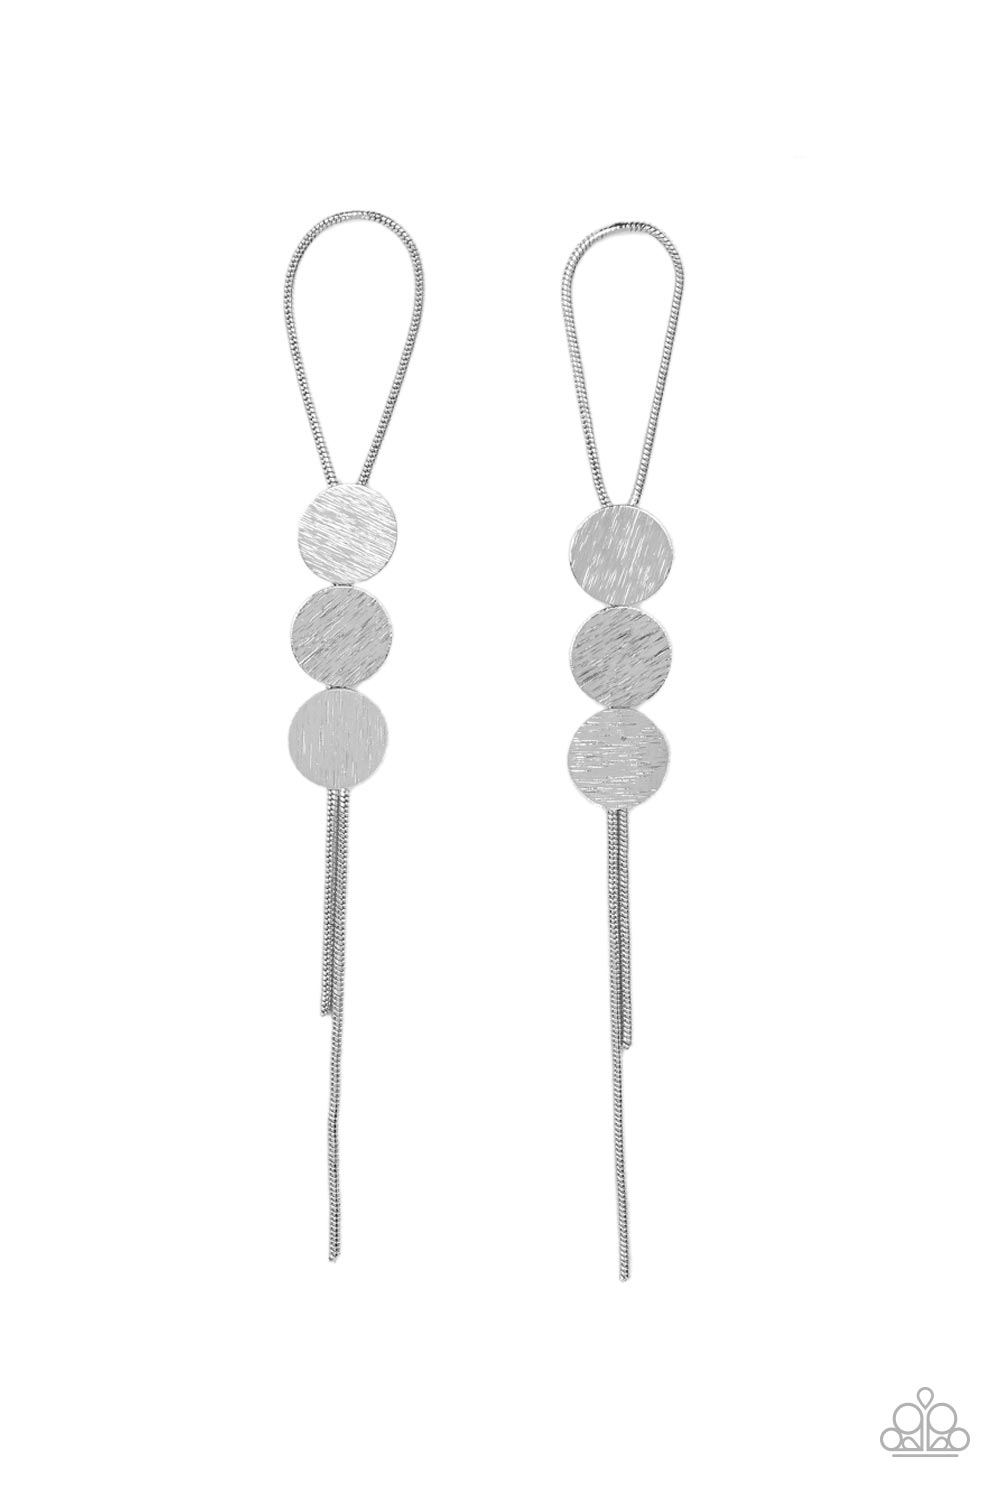 Bolo Beam - Silver Earrings